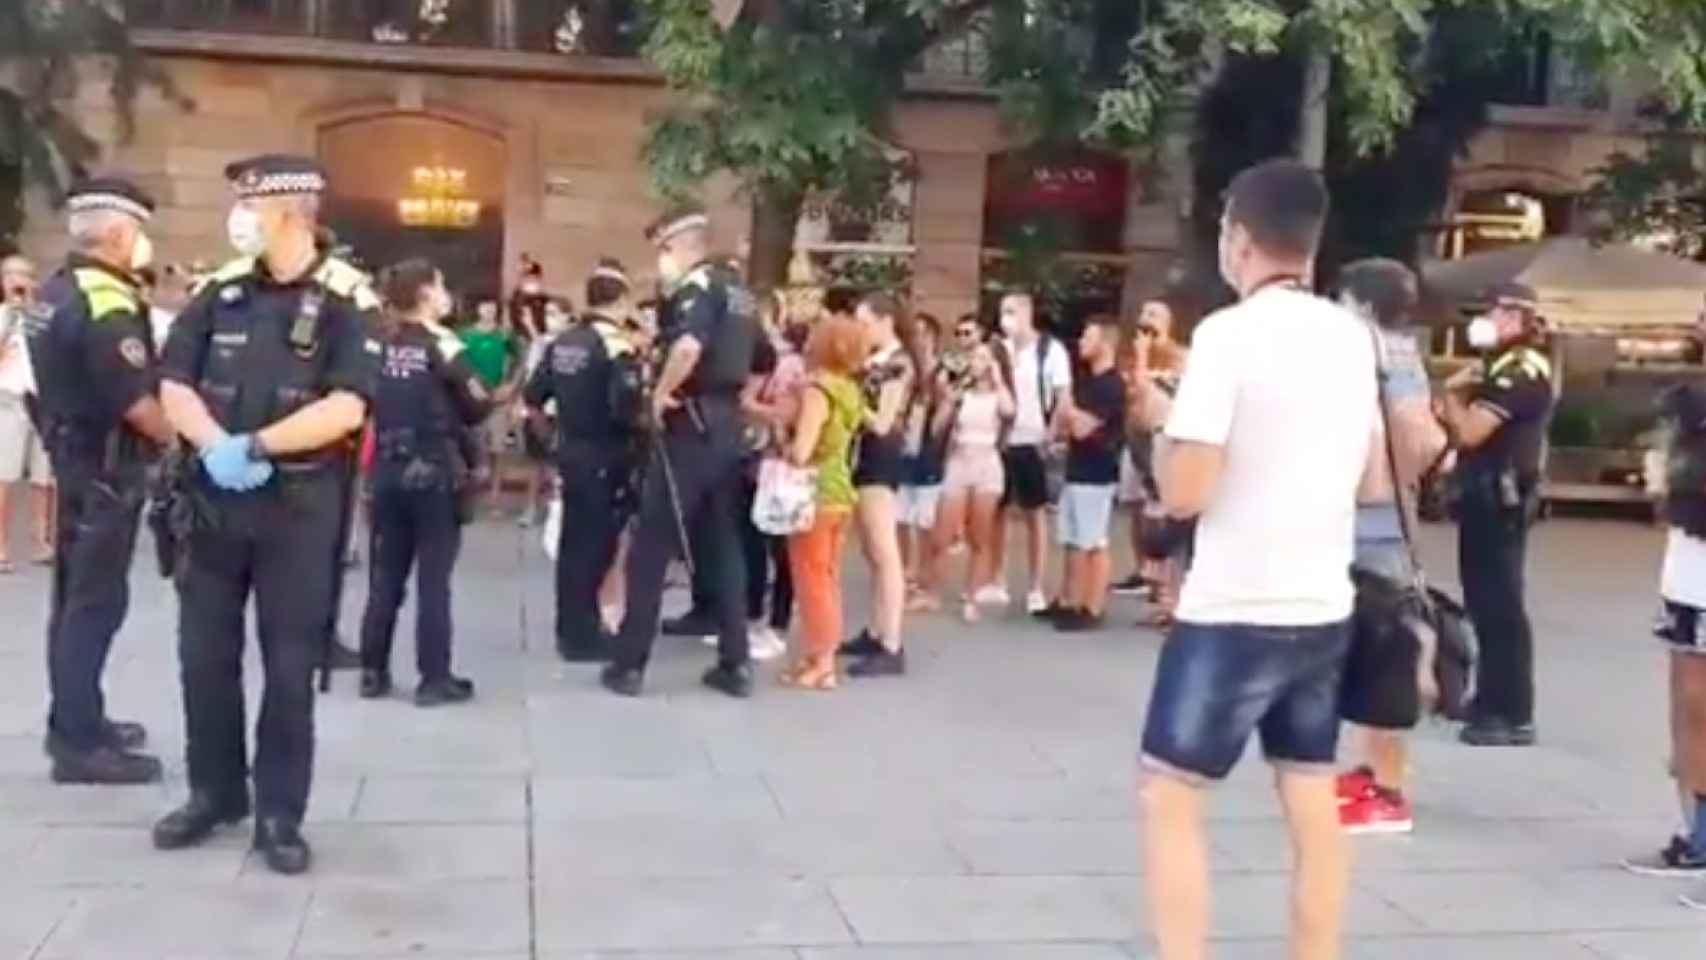 La Guardia Urbana identifica a los participantes de la protesta sin mascarilla esta tarde en Barcelona / @SimOnTheWay